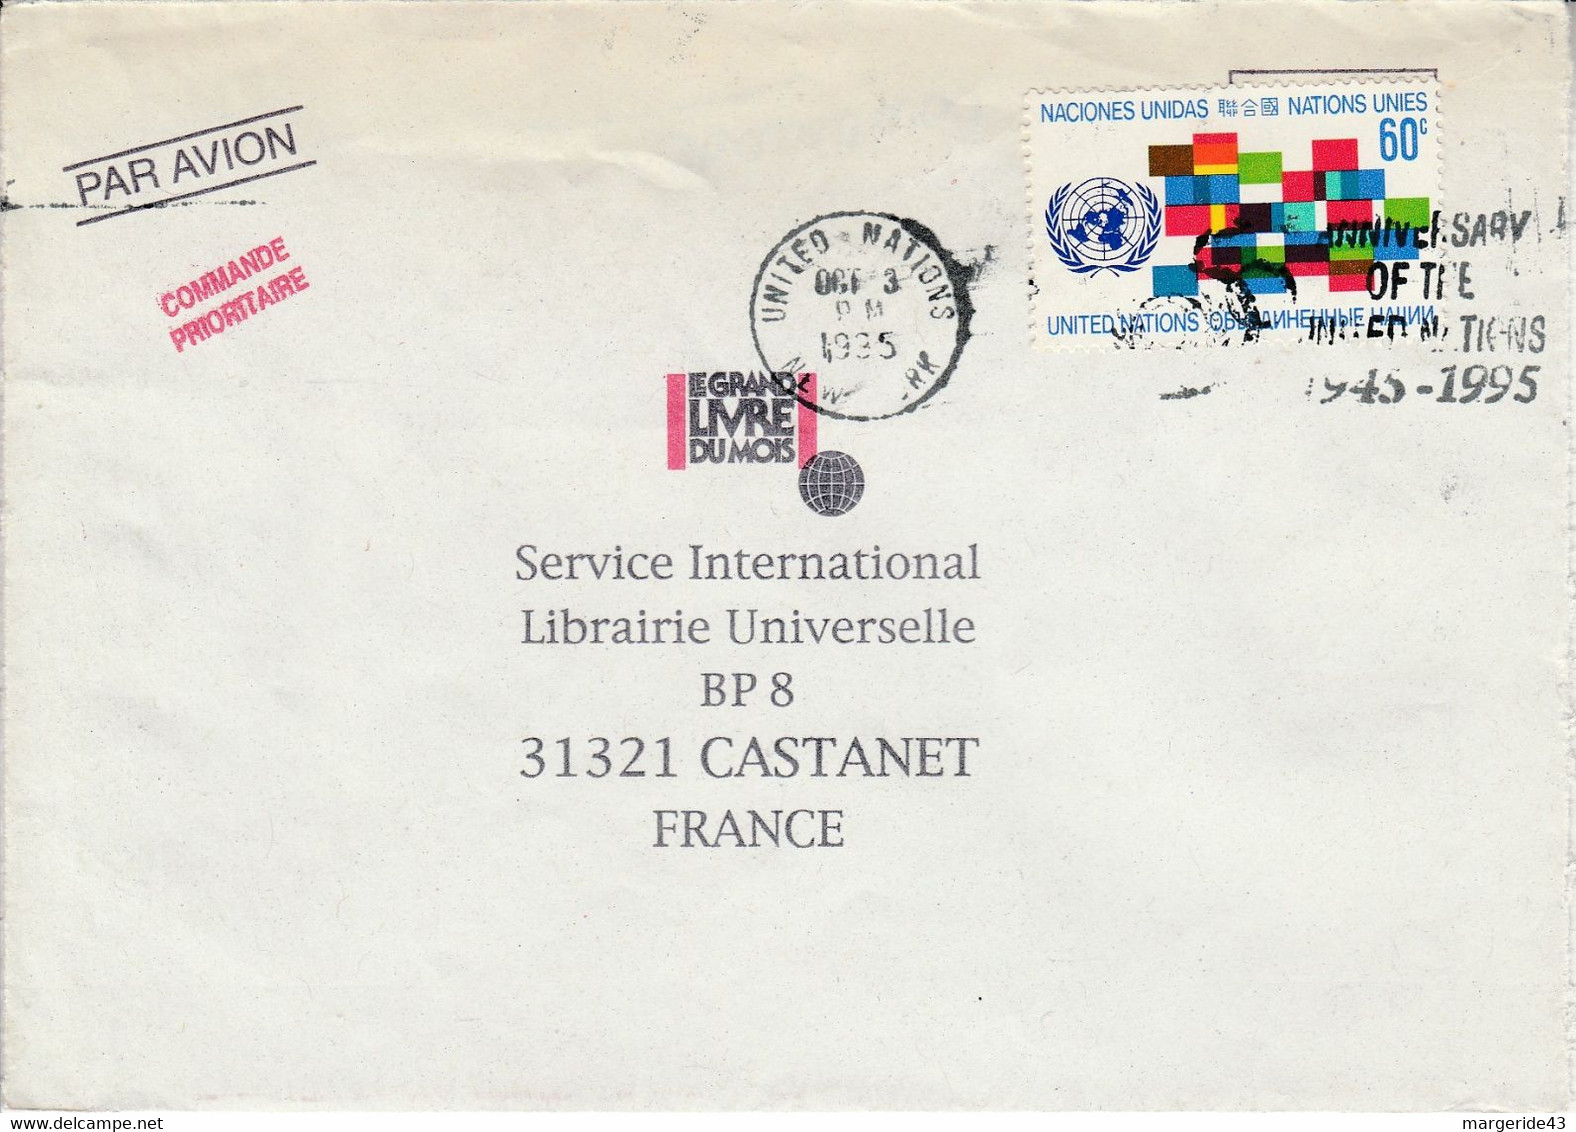 NATIONS UNIES SEUL SUR LETTRE POUR LA FRANCE 1995 - Covers & Documents